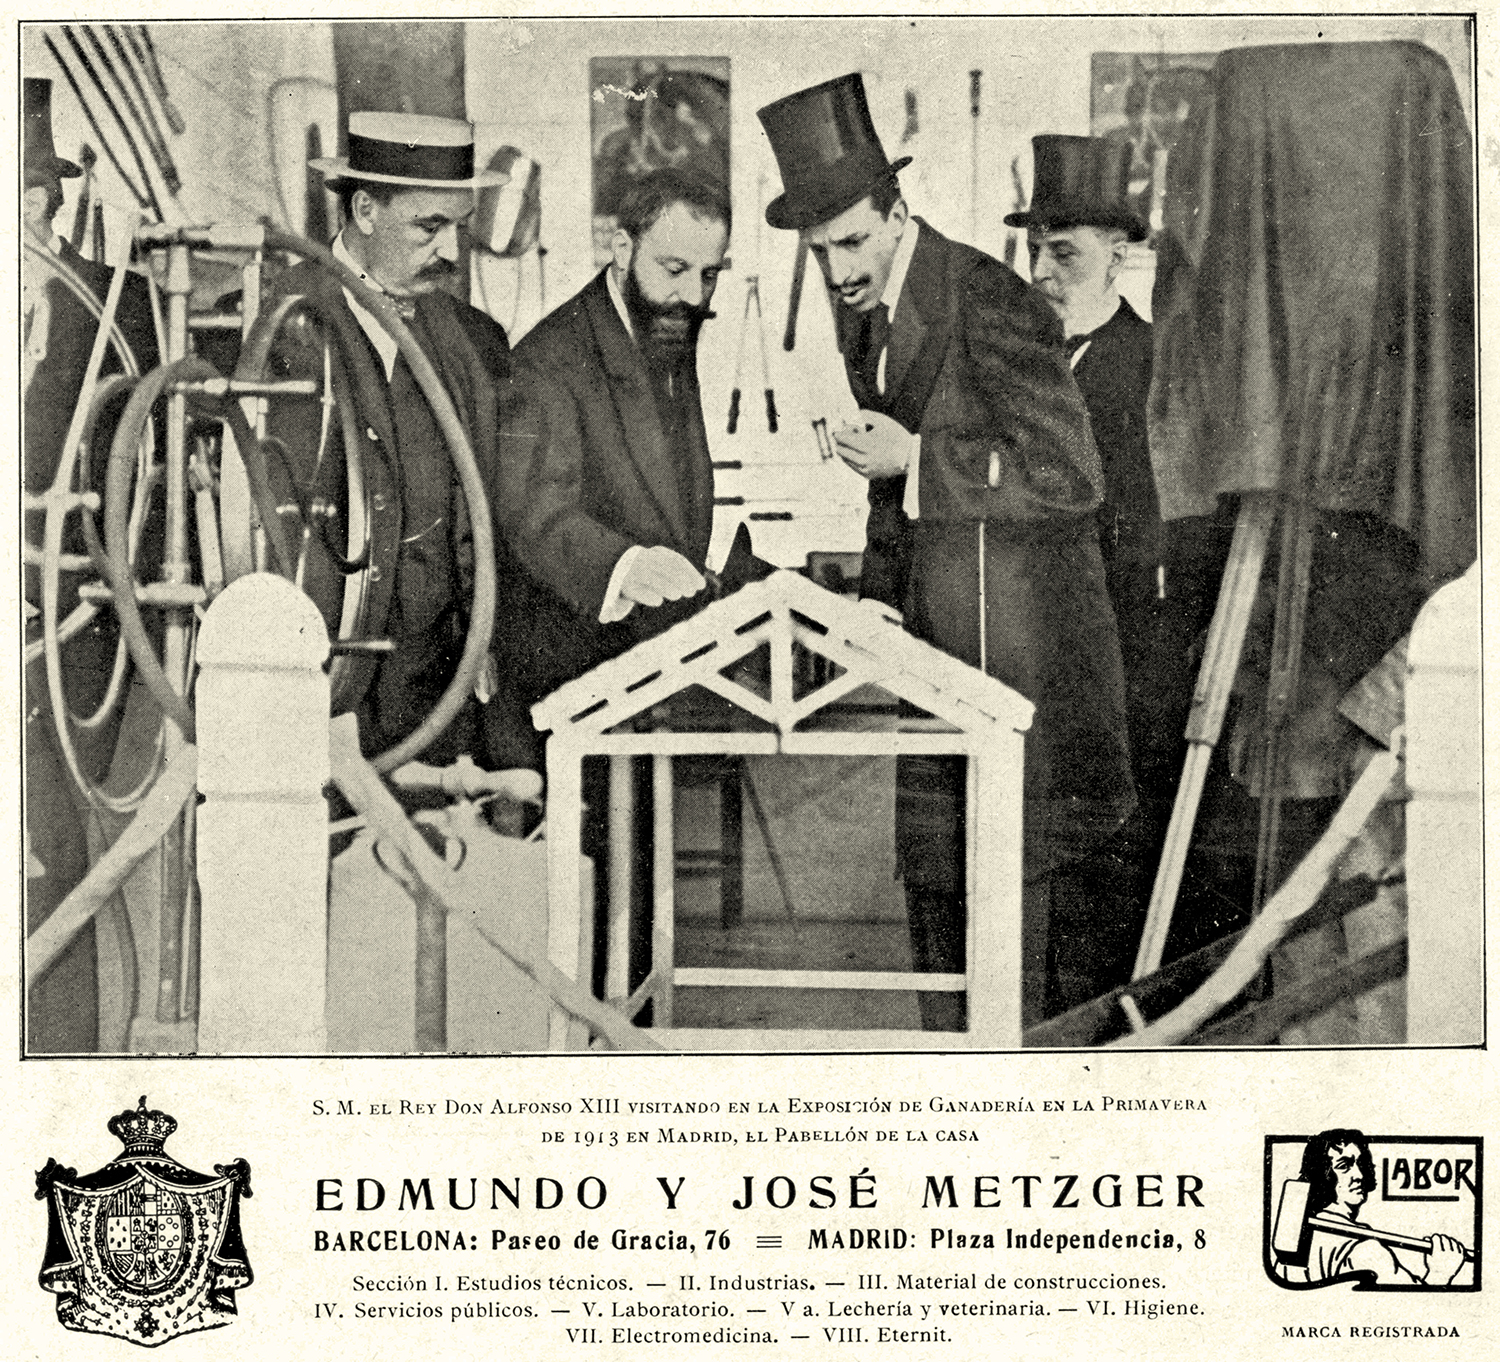 Fotografía de los hermanos Metzger (judíos suissos) presentando sus productos al rey Alfonso XIII. Font European Observatory of Memories